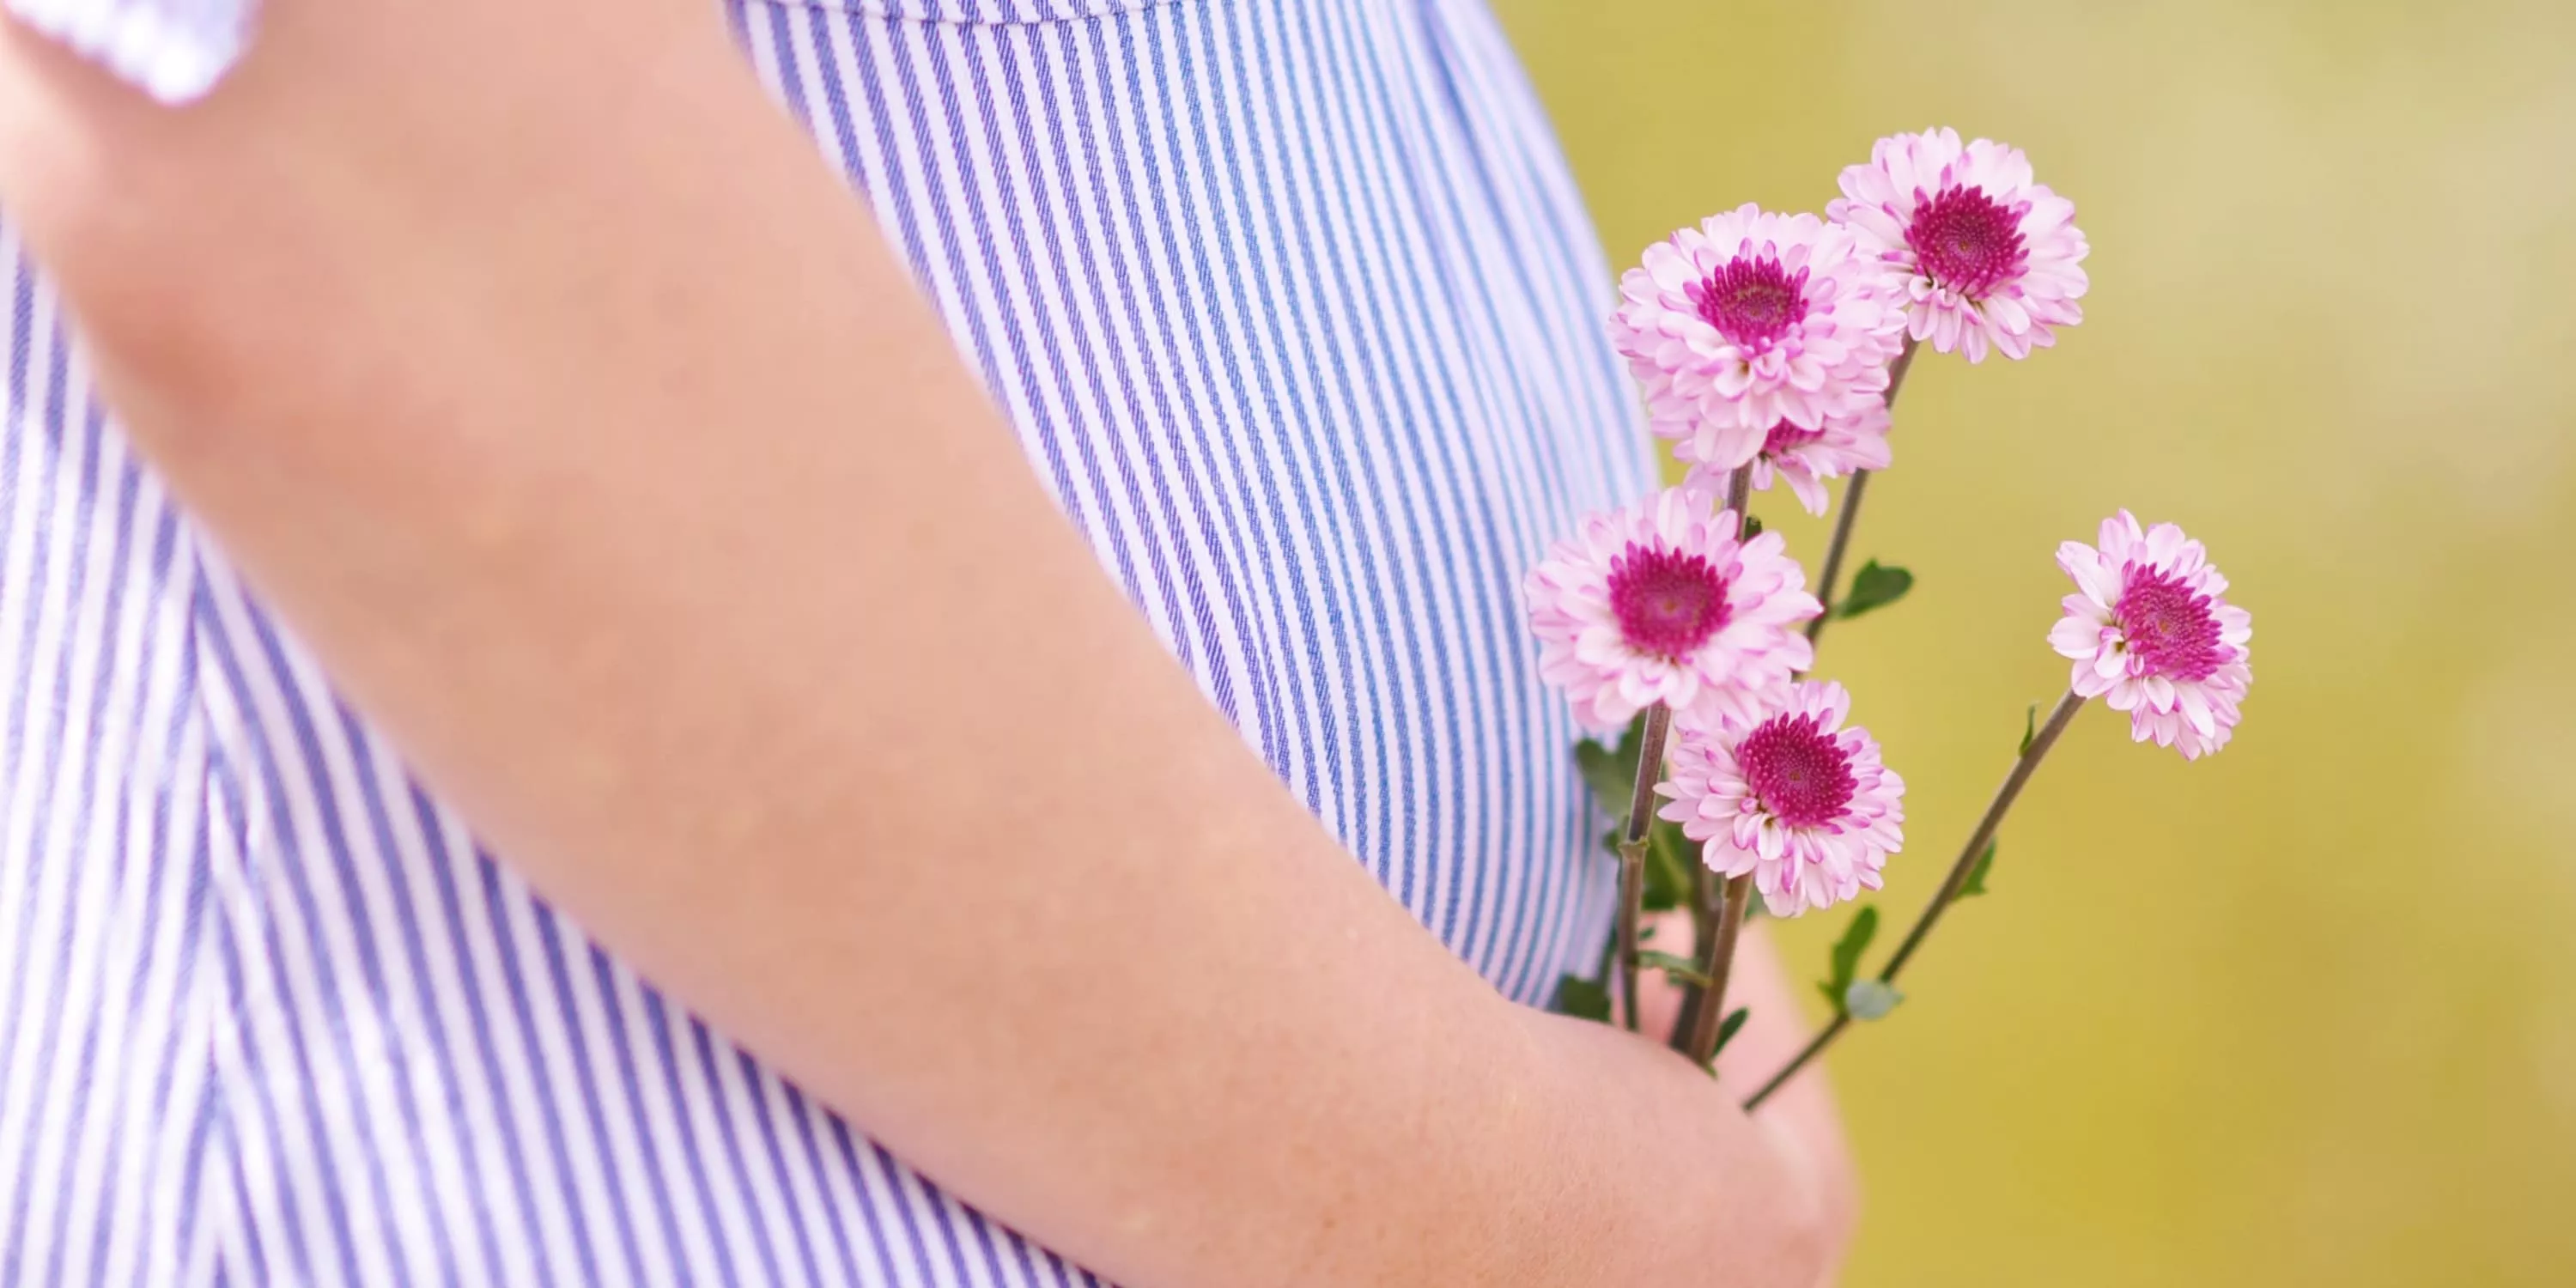 Ausschnitt von Babybauch einer schwangeren Frau, die Blumen hält (22. SSW)